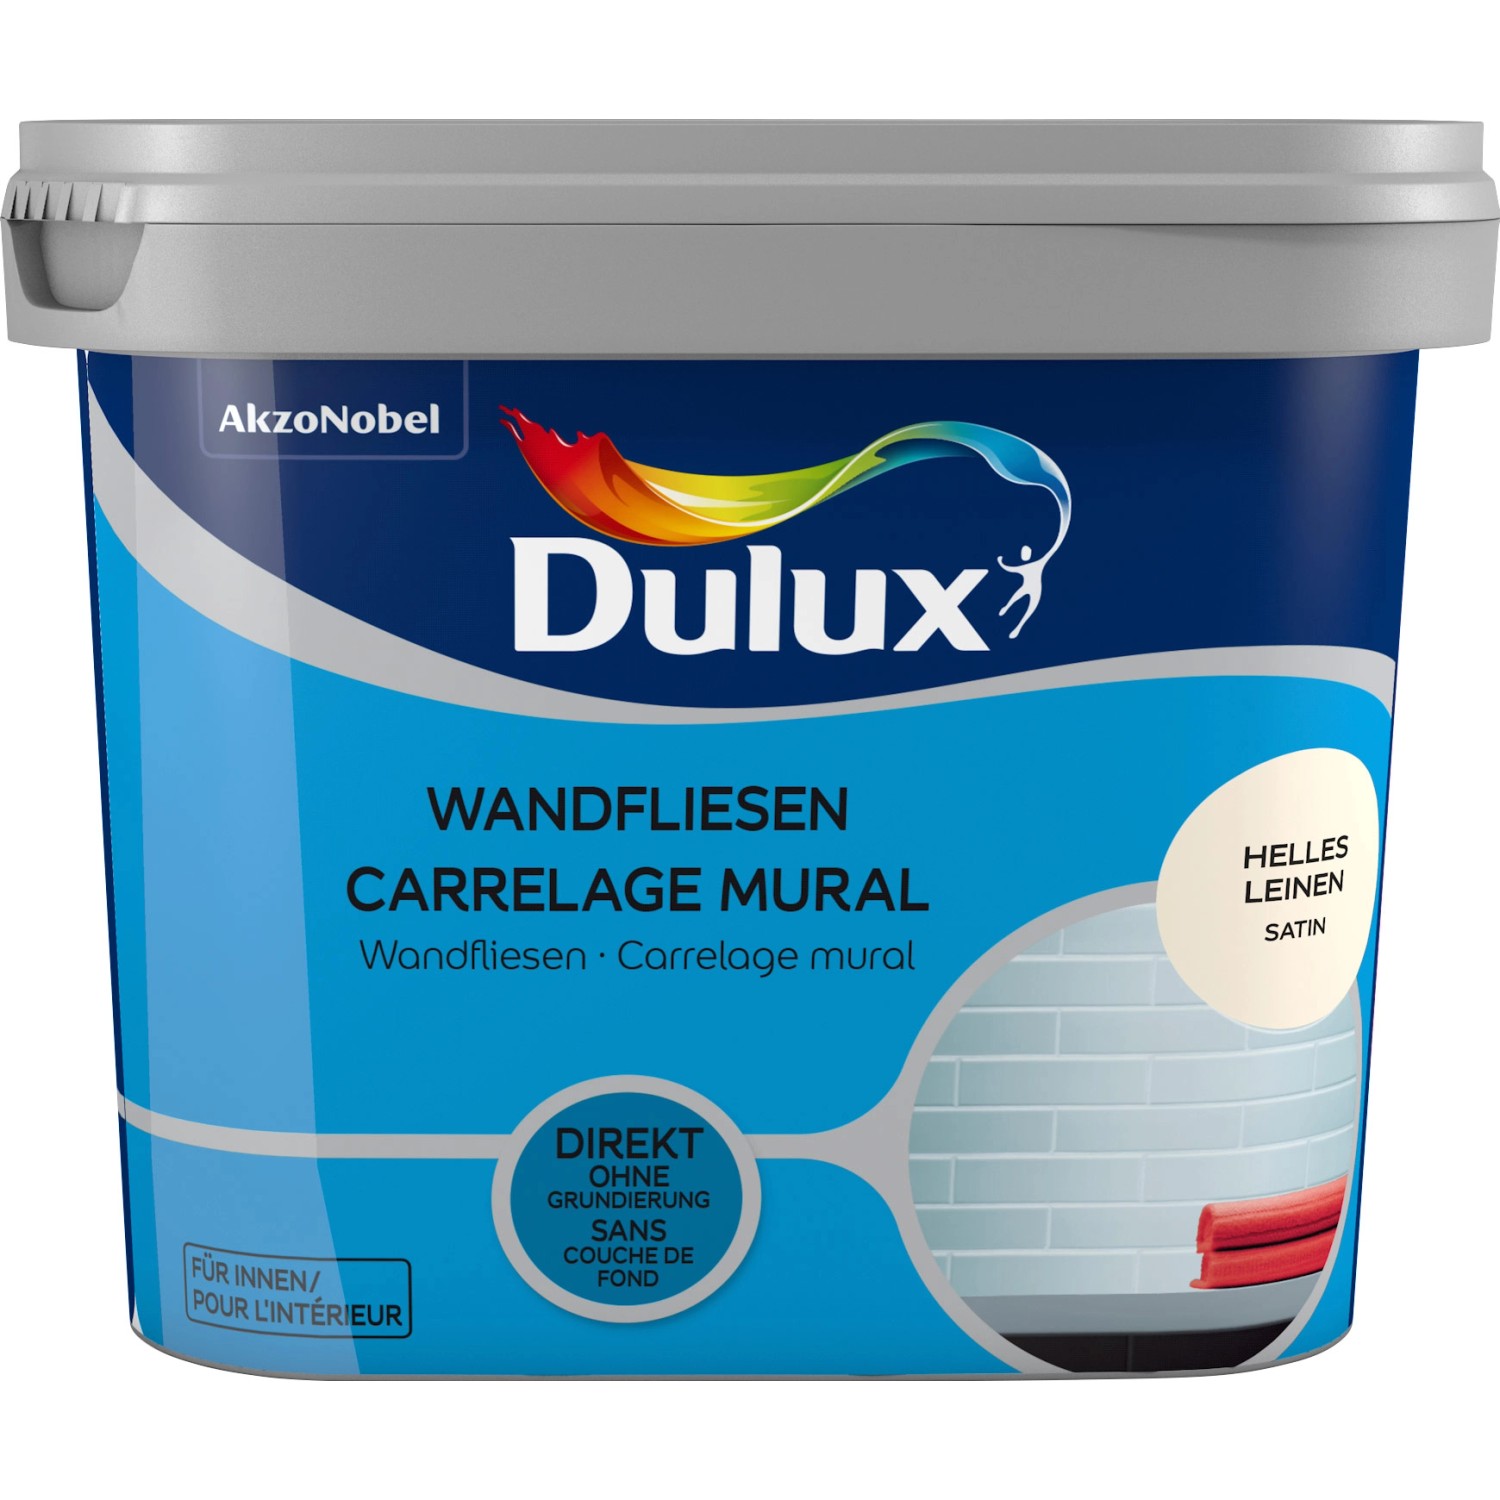 Dulux Fresh Up Wandfliesenlack Satin Helles Leinen 750 ml